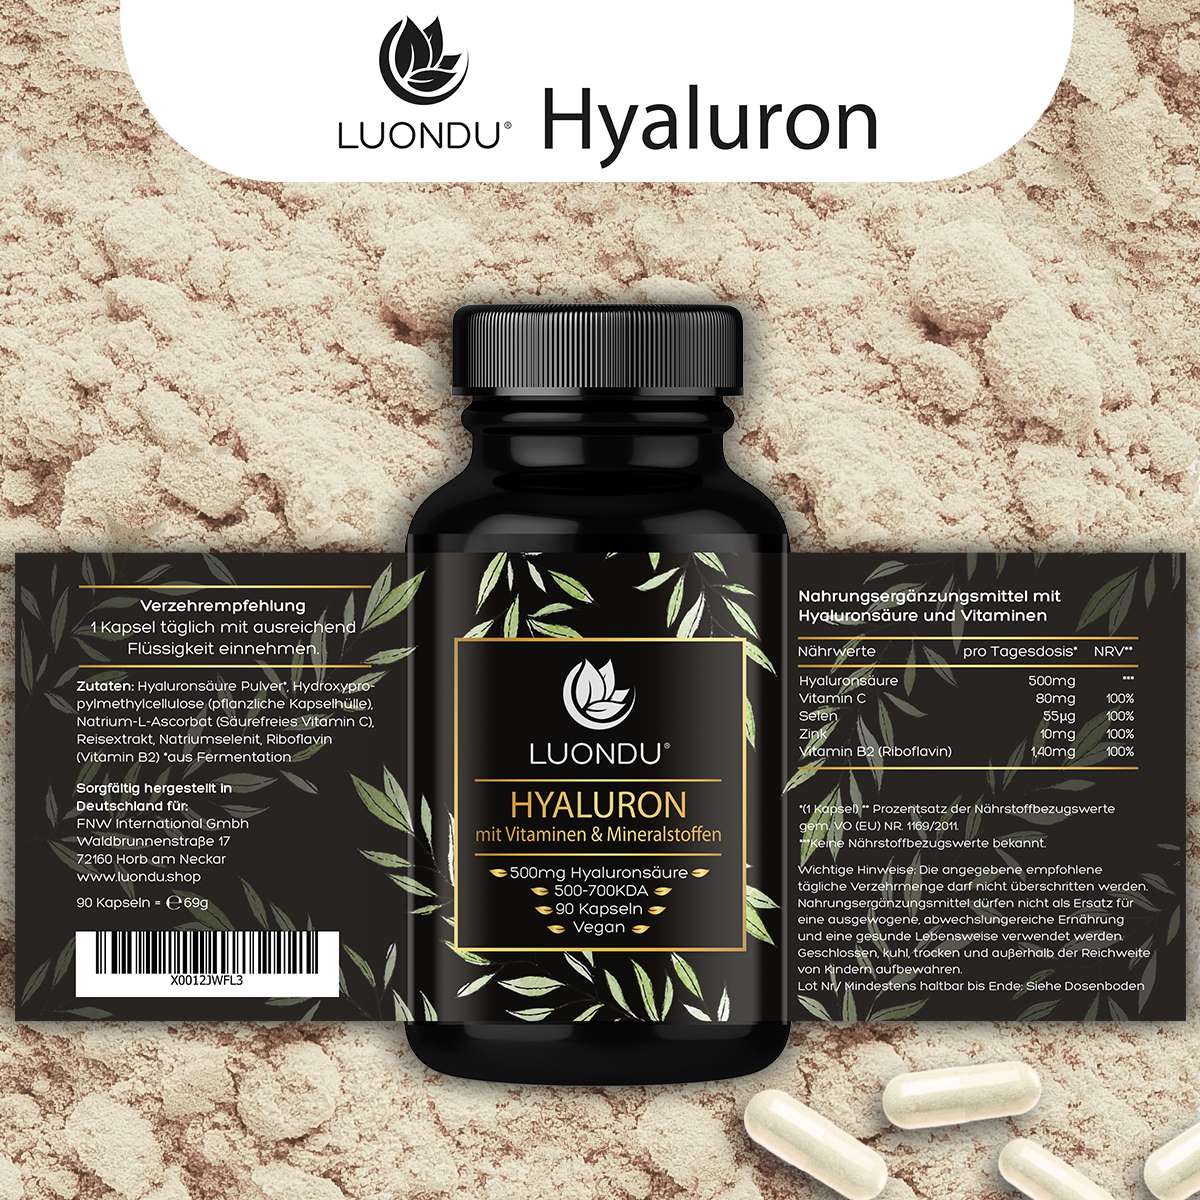 Luondu Hyaluronsäure 500mg Hyaluron mit Vitaminen & Mineralstoffen - 90 Kapseln